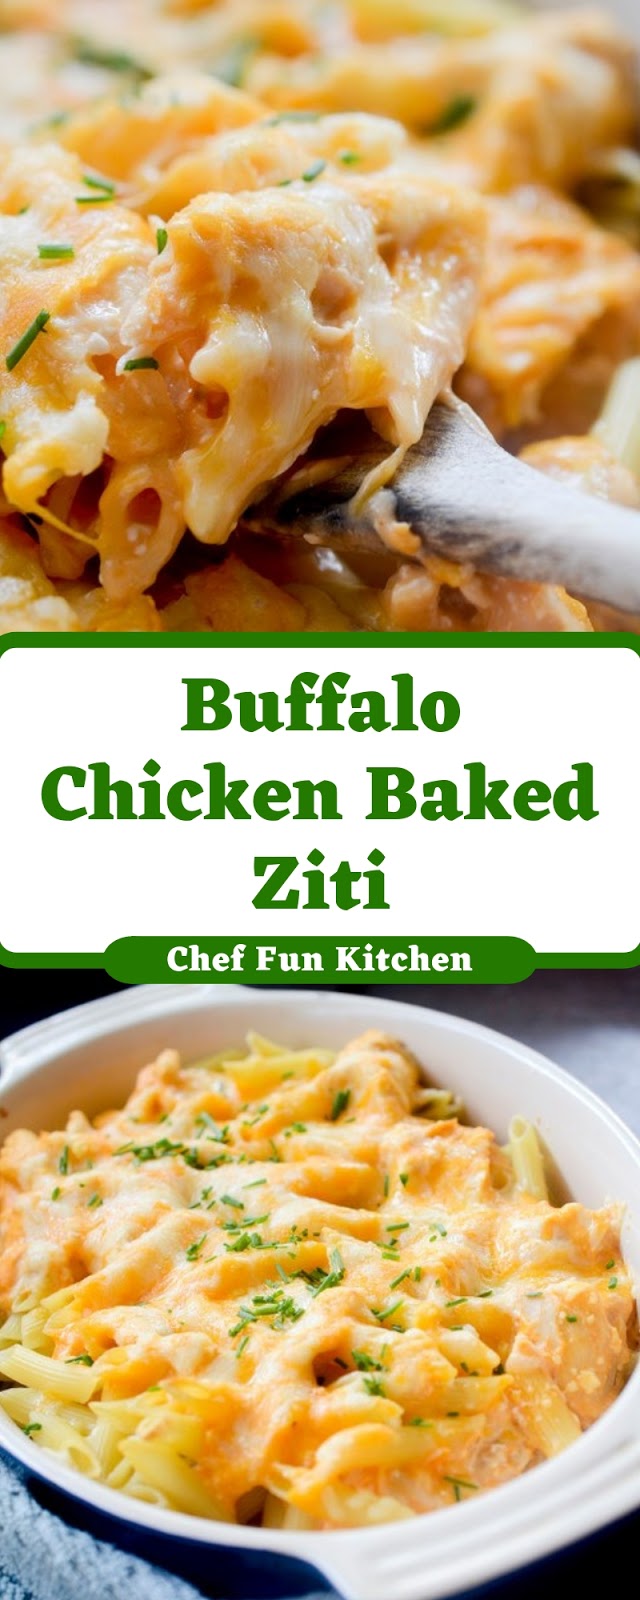 Buffalo Chicken Baked Ziti